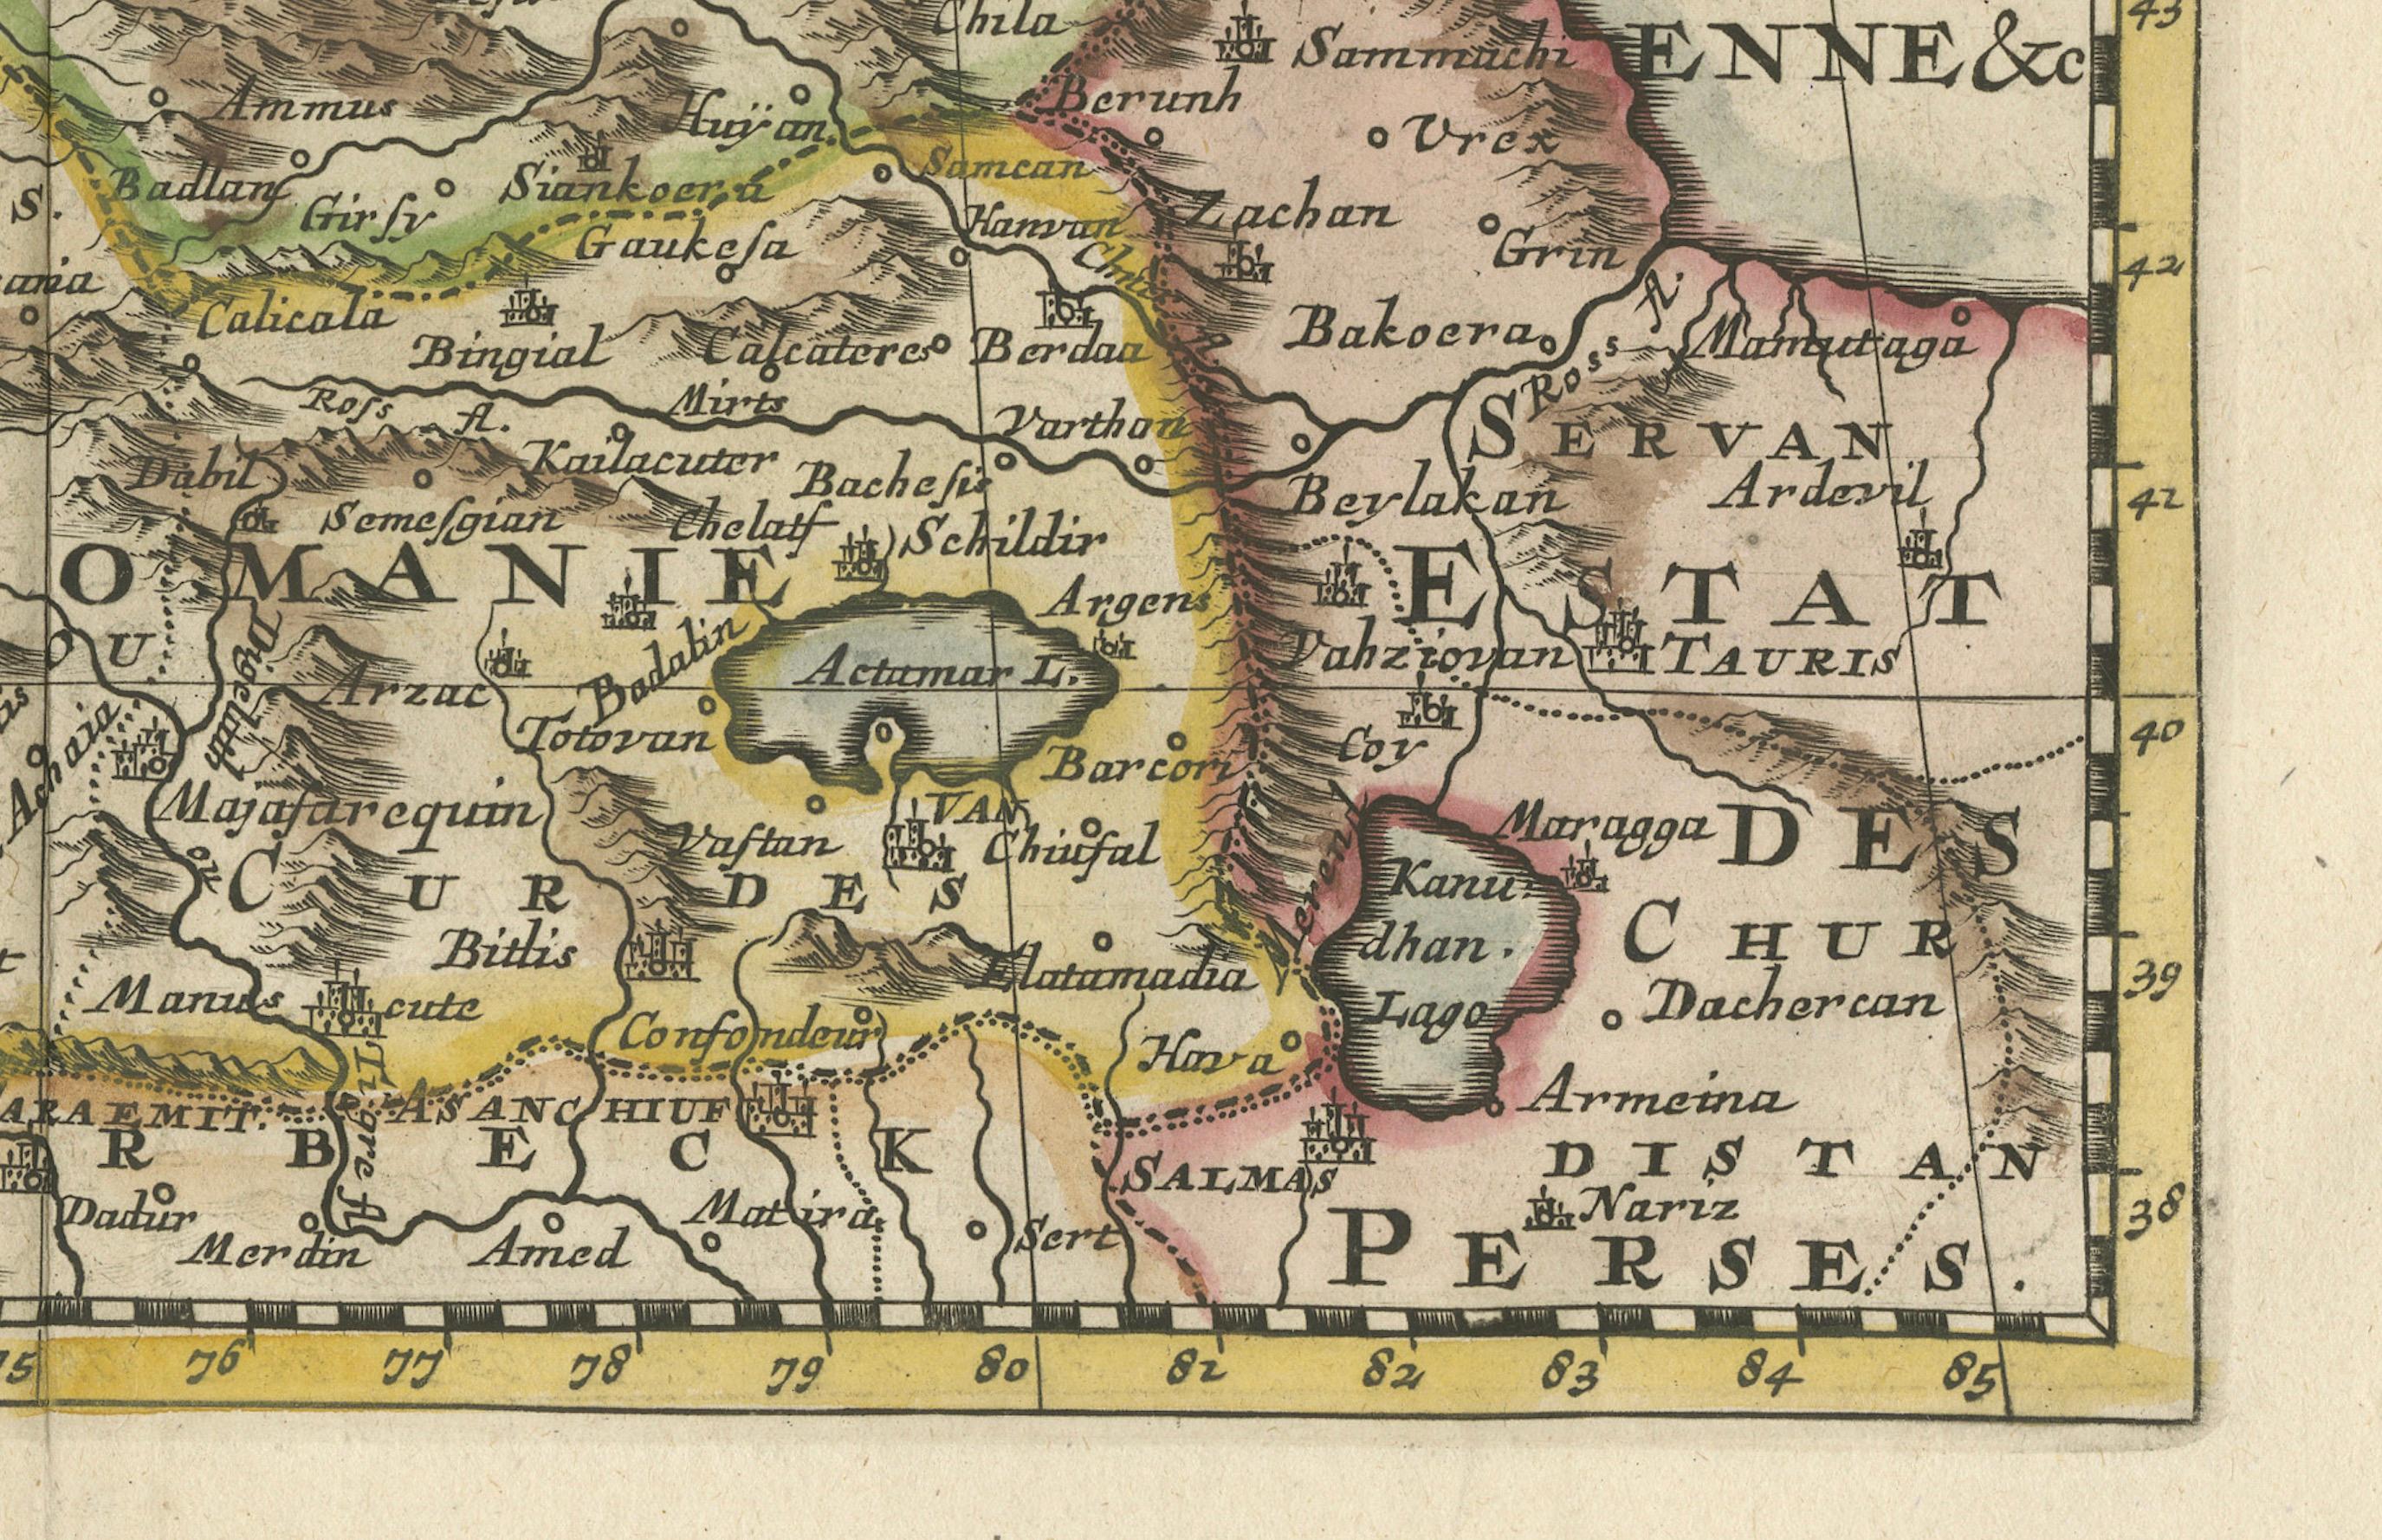 Titel: ³eKarte von Turanien, Georgien und Komanien³c

Dieser Druck zeigt eine detailreiche Karte der Kaukasusregion mit dem Titel 